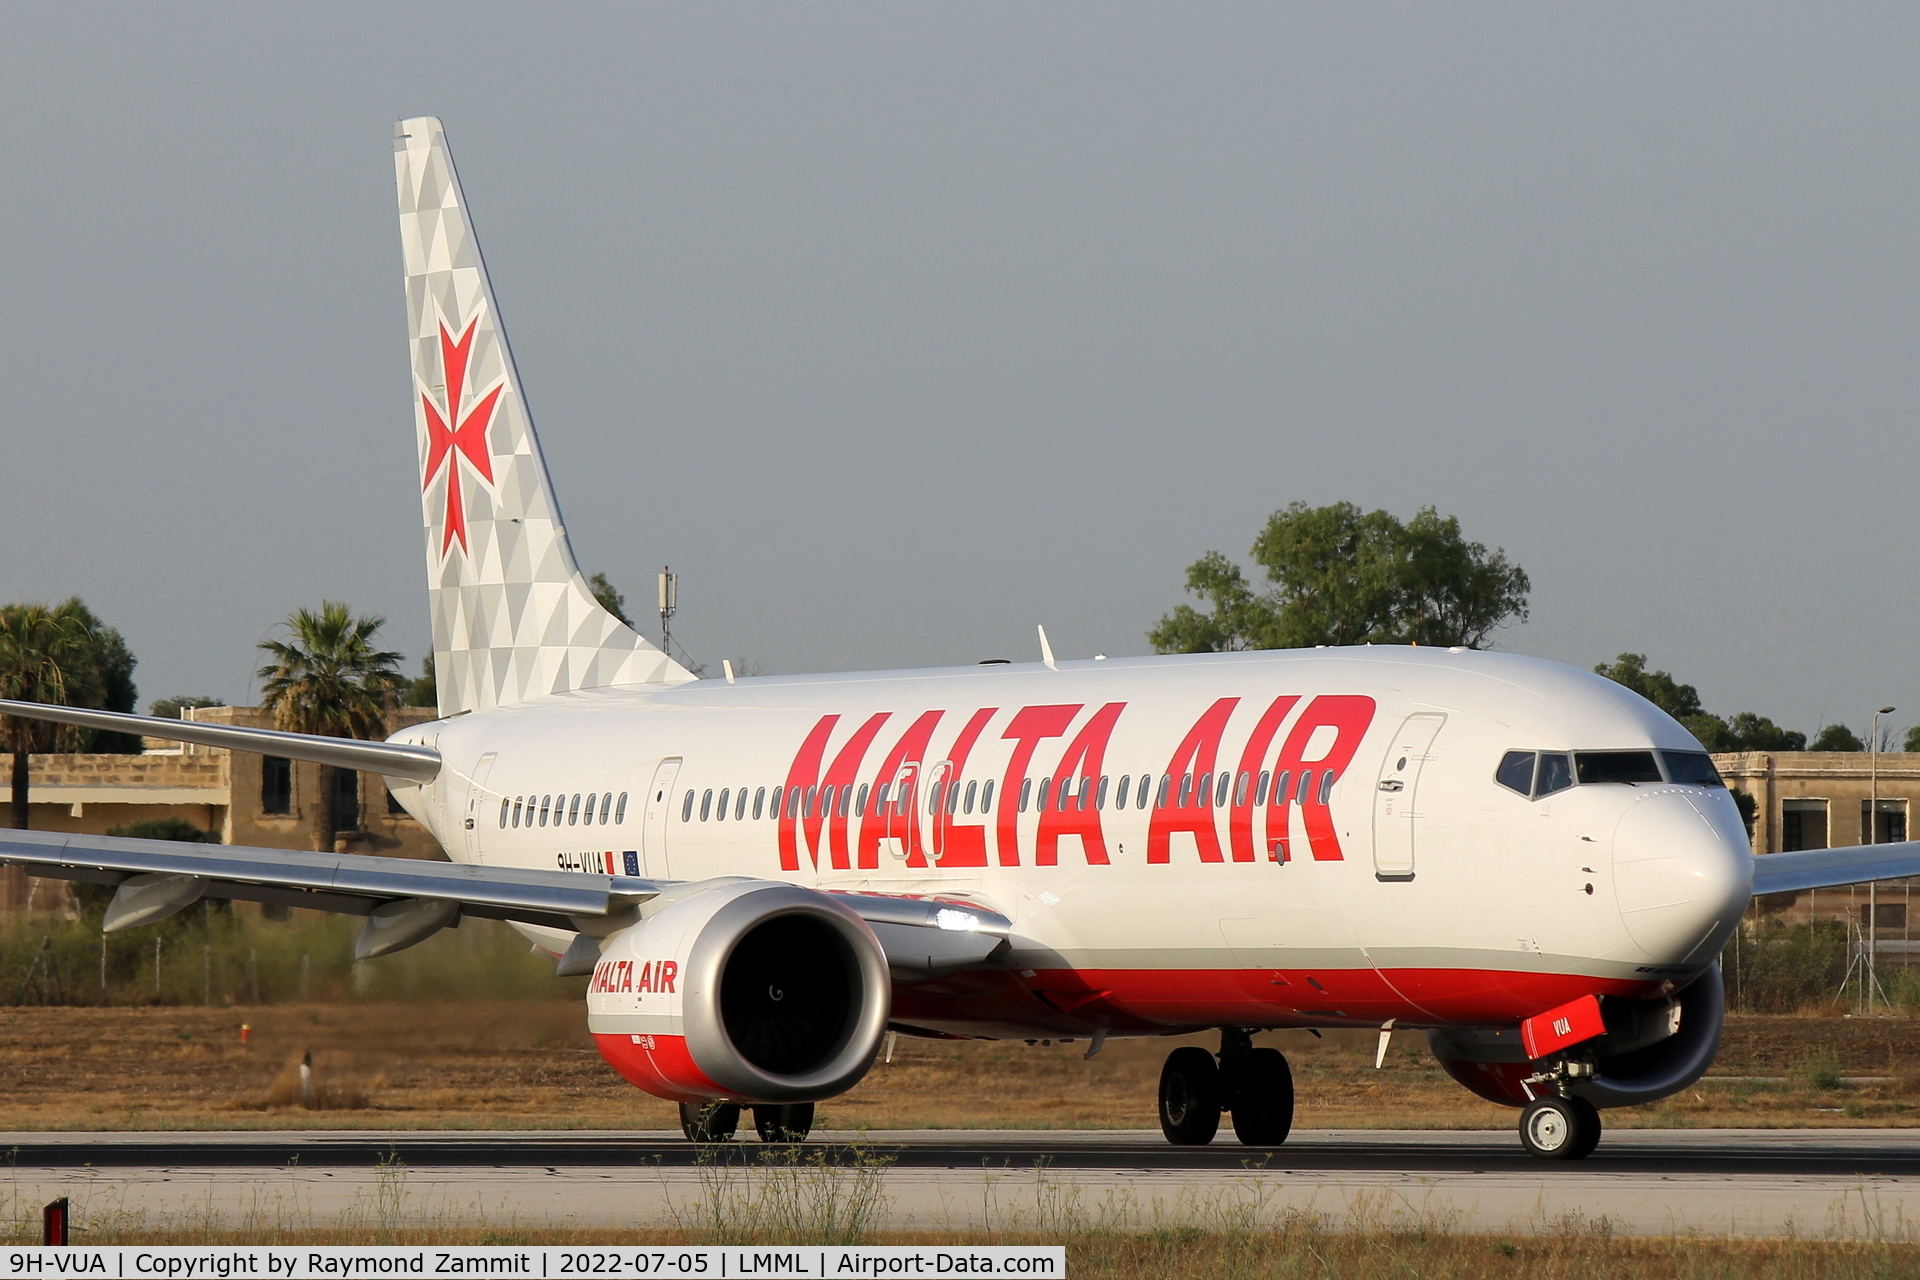 9H-VUA, 2021 Boeing 737-8-200 MAX C/N 65874, B737-8 MAX 9H-VUA Malta Air